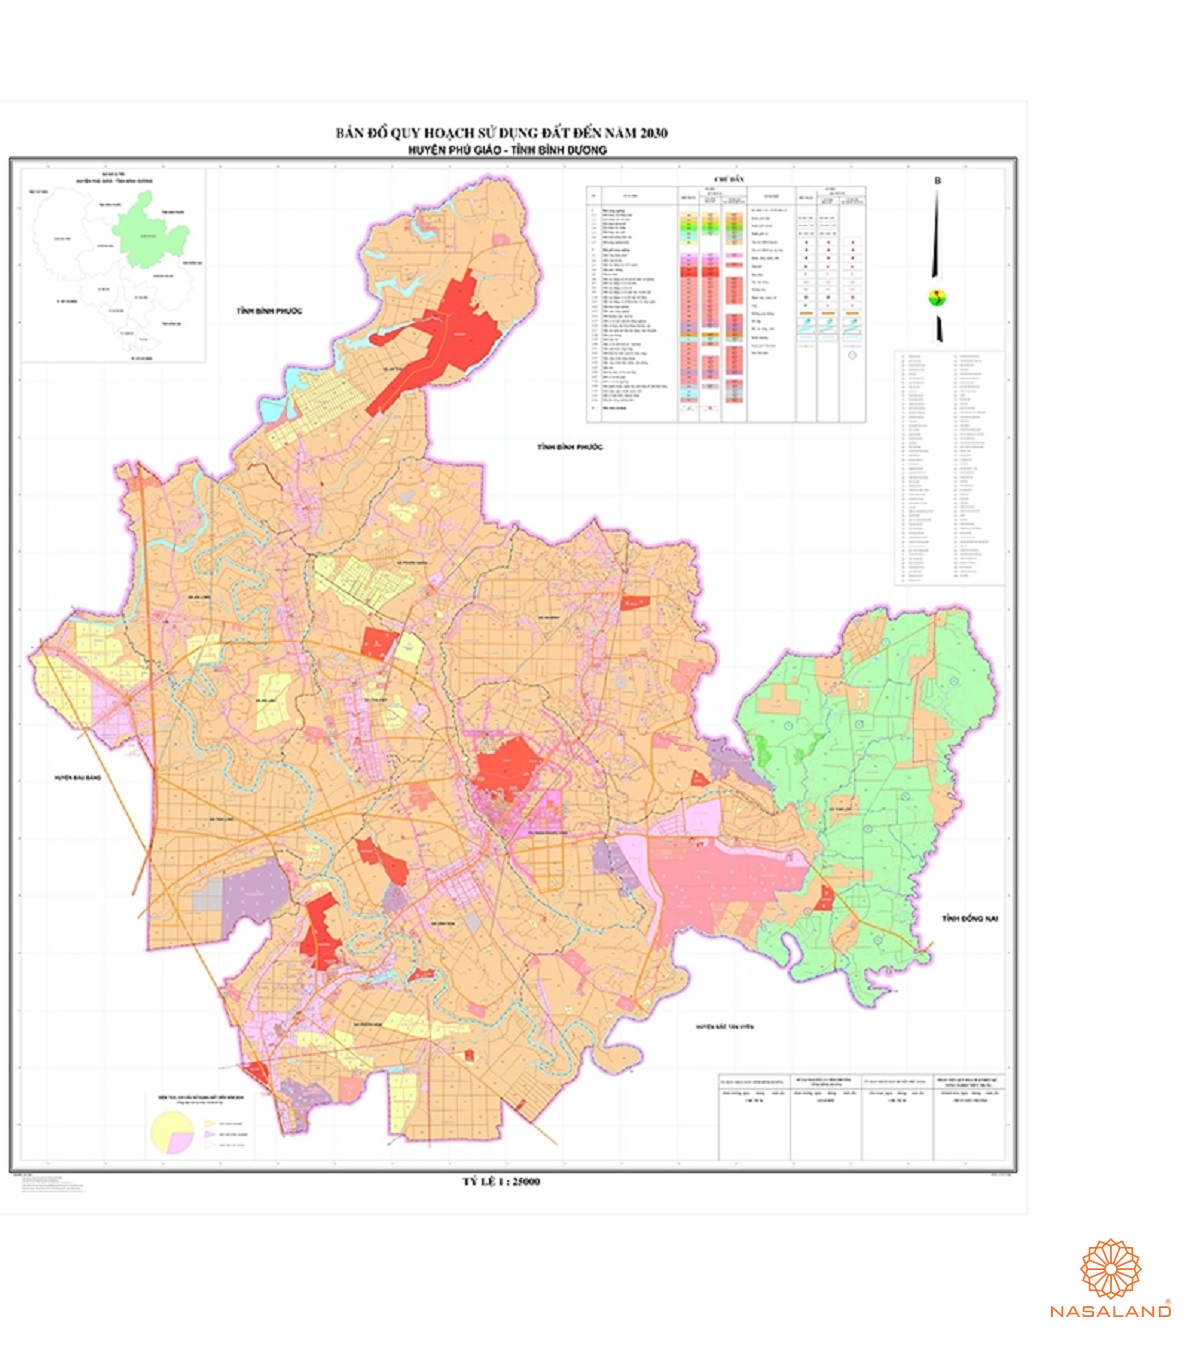 Quy hoạch sử dụng đất Huyện Phú Giáo thể hiện trên bản đồ quy hoạch phân khu tỷ lệ 1/2000 của Tỉnh Bình Dương